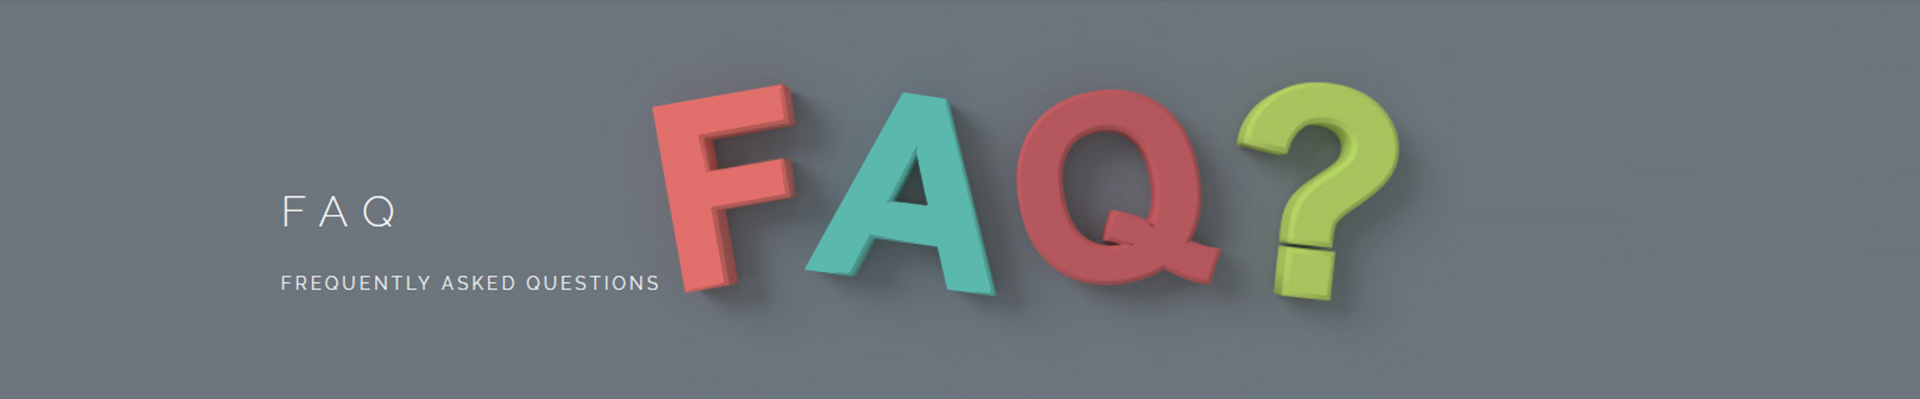 Mga FAQ-banner